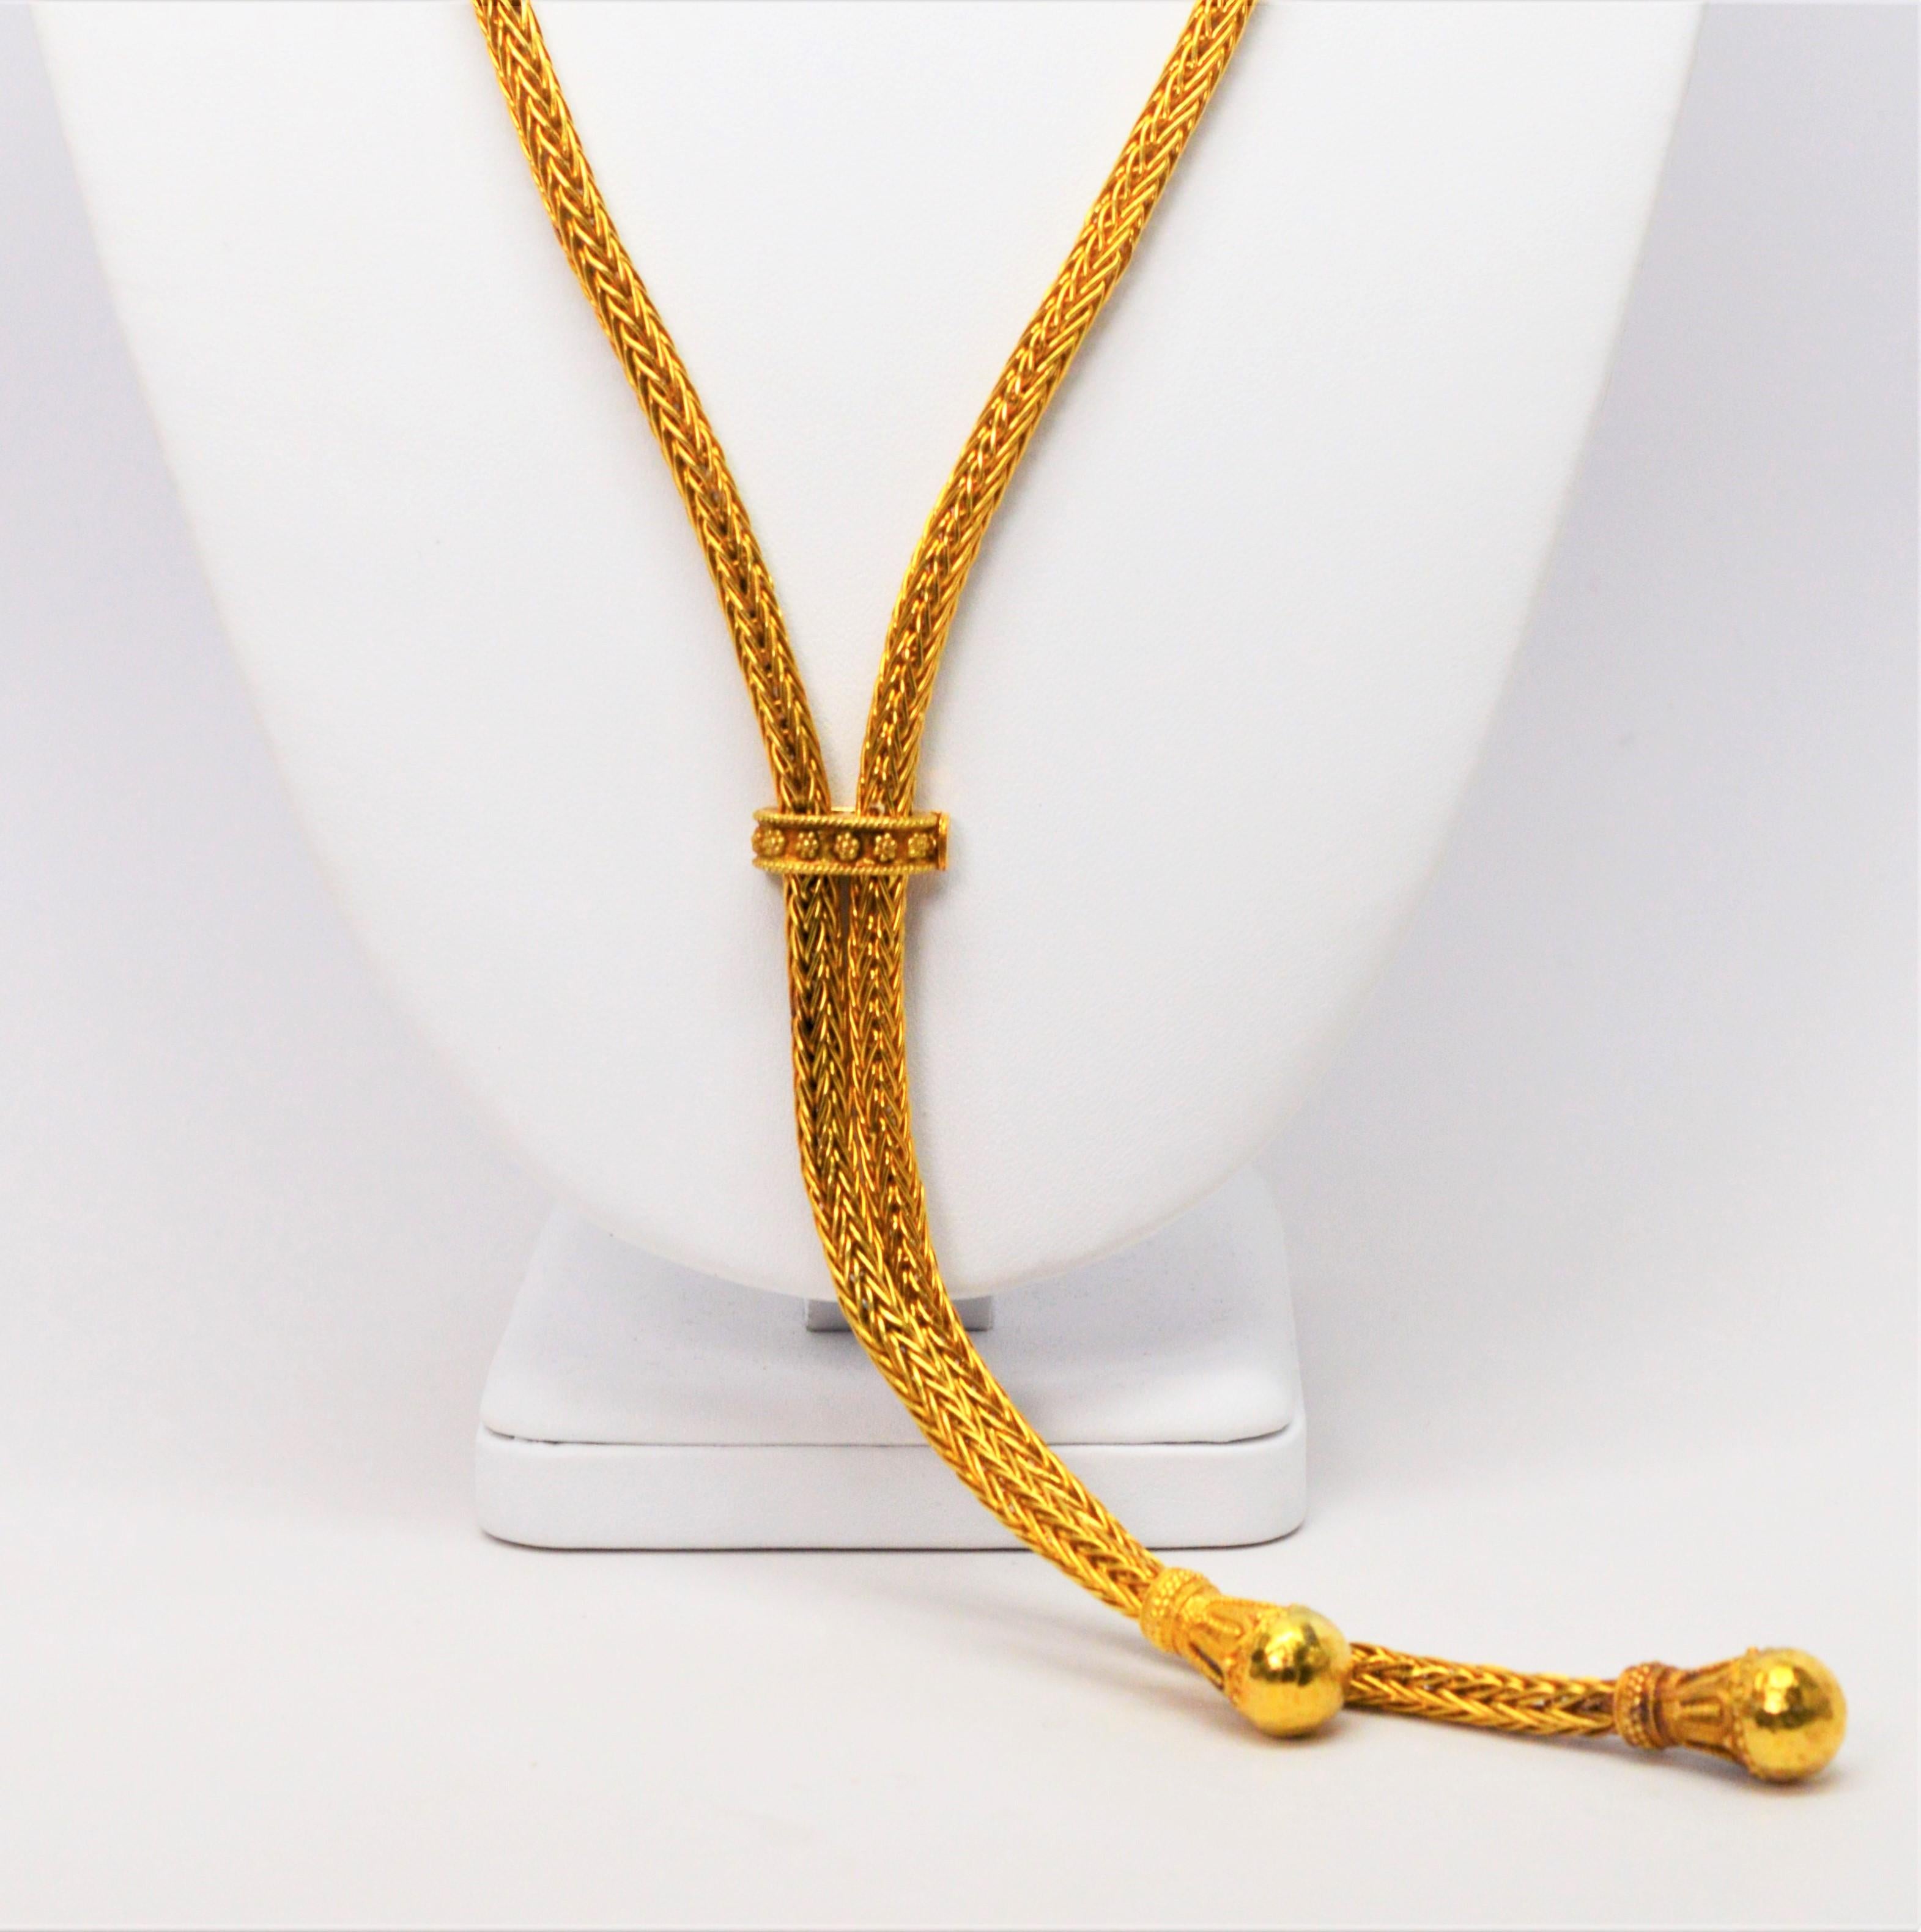 Véritable pièce maîtresse, en or jaune brillant de dix-huit carats, cette importante chaîne en corde tressée mesure 30 cm de long et est équipée d'une glissière décorative en or réglable, créant ainsi un collier de style lariat. Chaque extrémité de